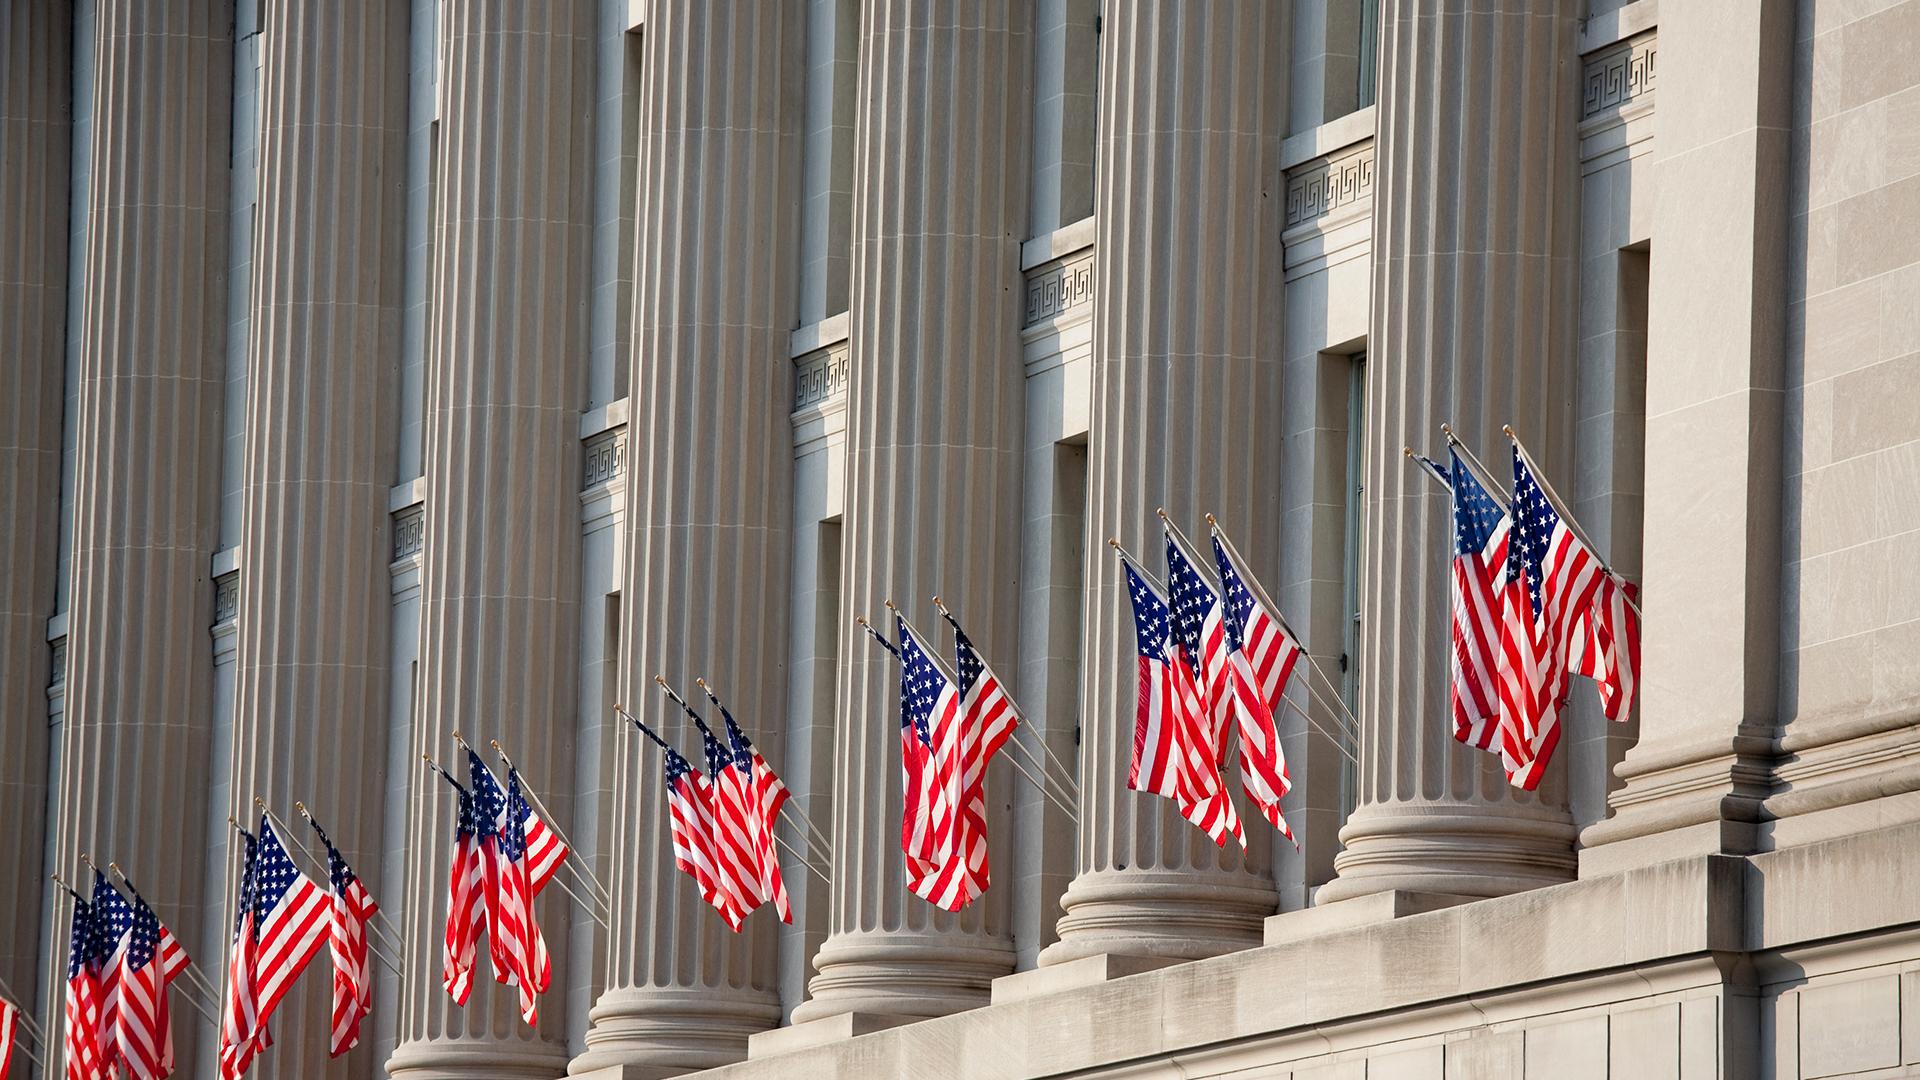 US flag decorations between columns